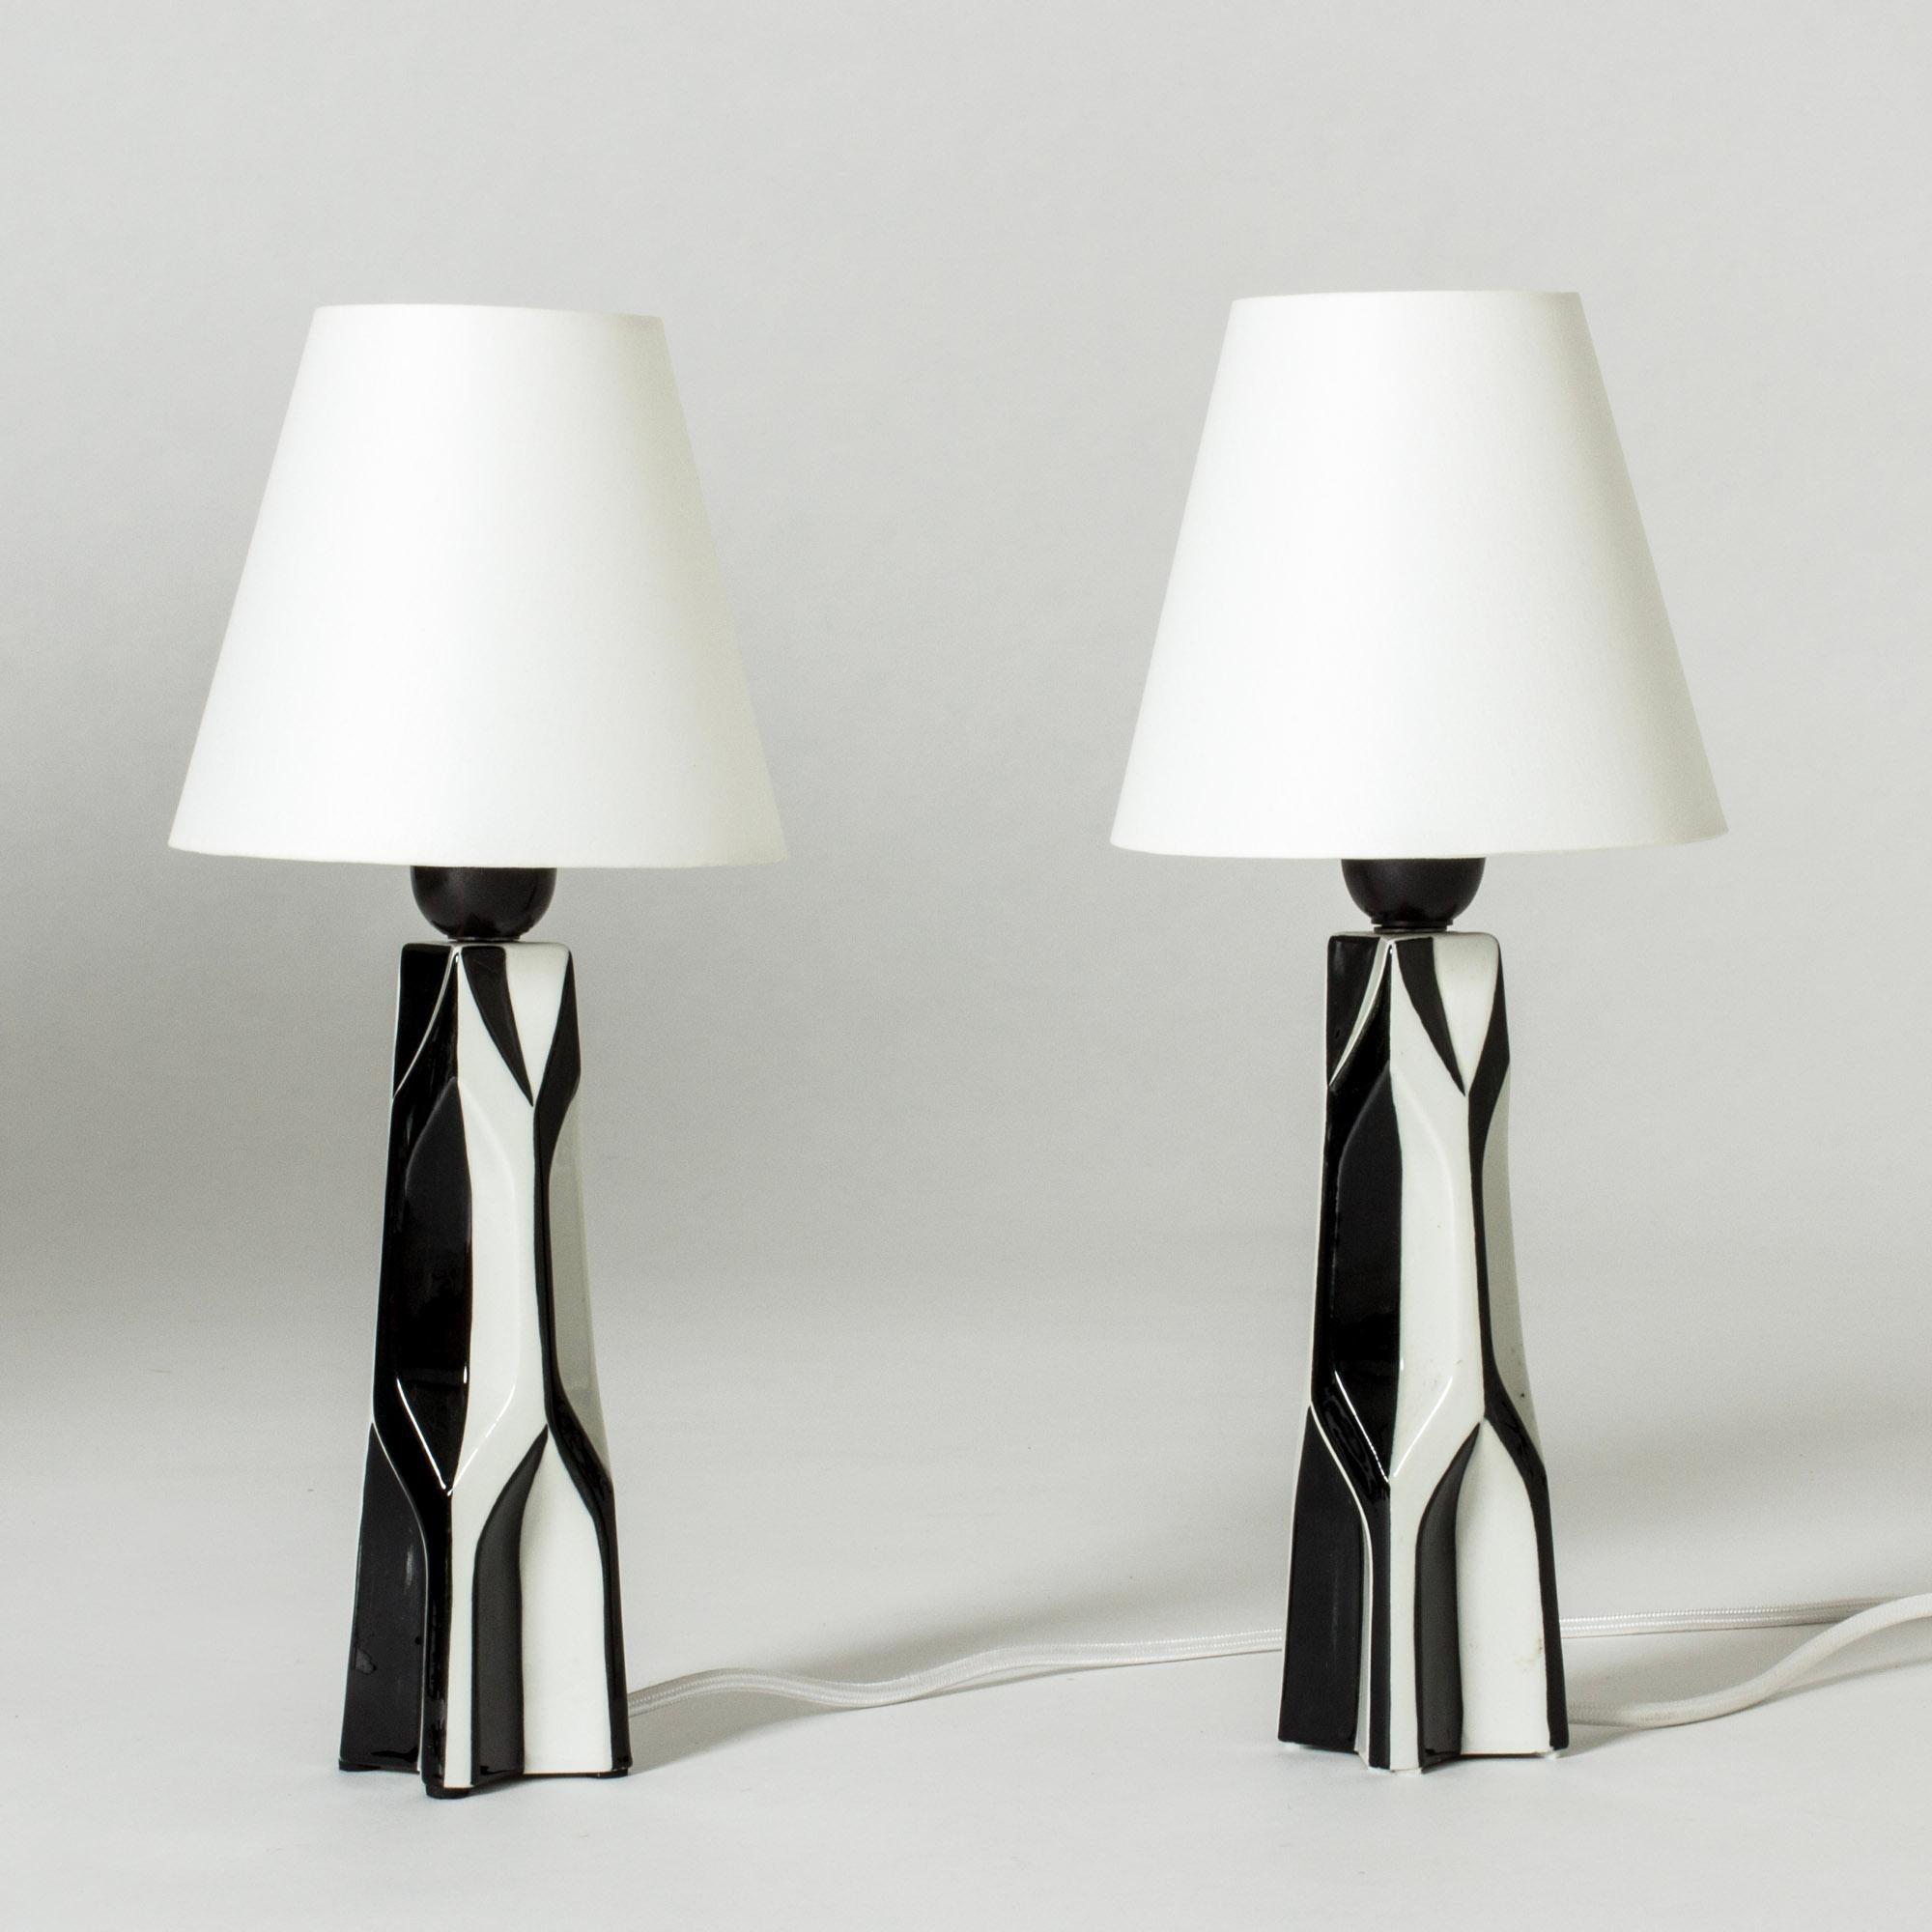 Scandinavian Modern Modernist Stoneware Table Lamp by Carl-Harry Stålhane, Rörstrand, Sweden, 1950s For Sale